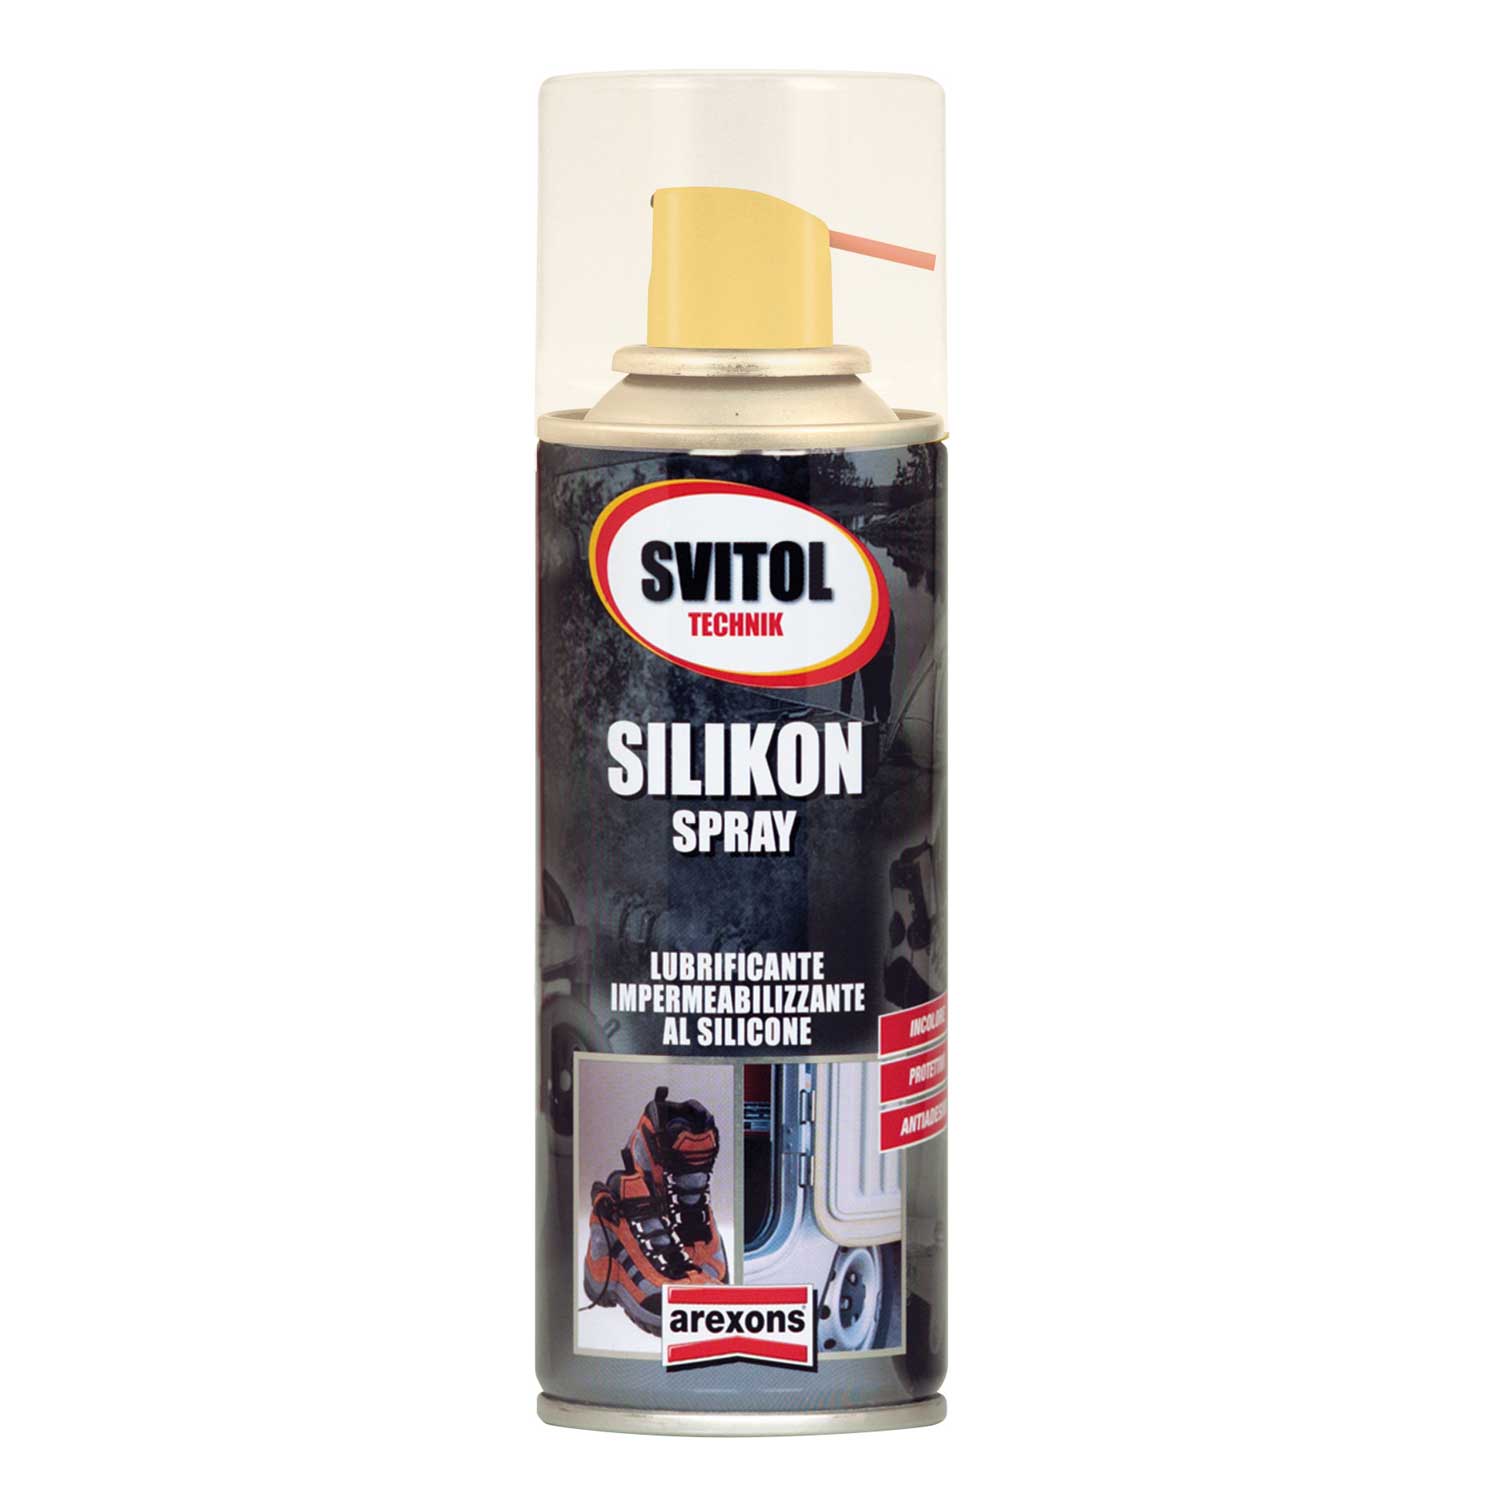 AREXONS Silikon 4183 in spray da 400ml impermeabilizzante con silicone per  guarnizioni in gomma, cinghie, plastica